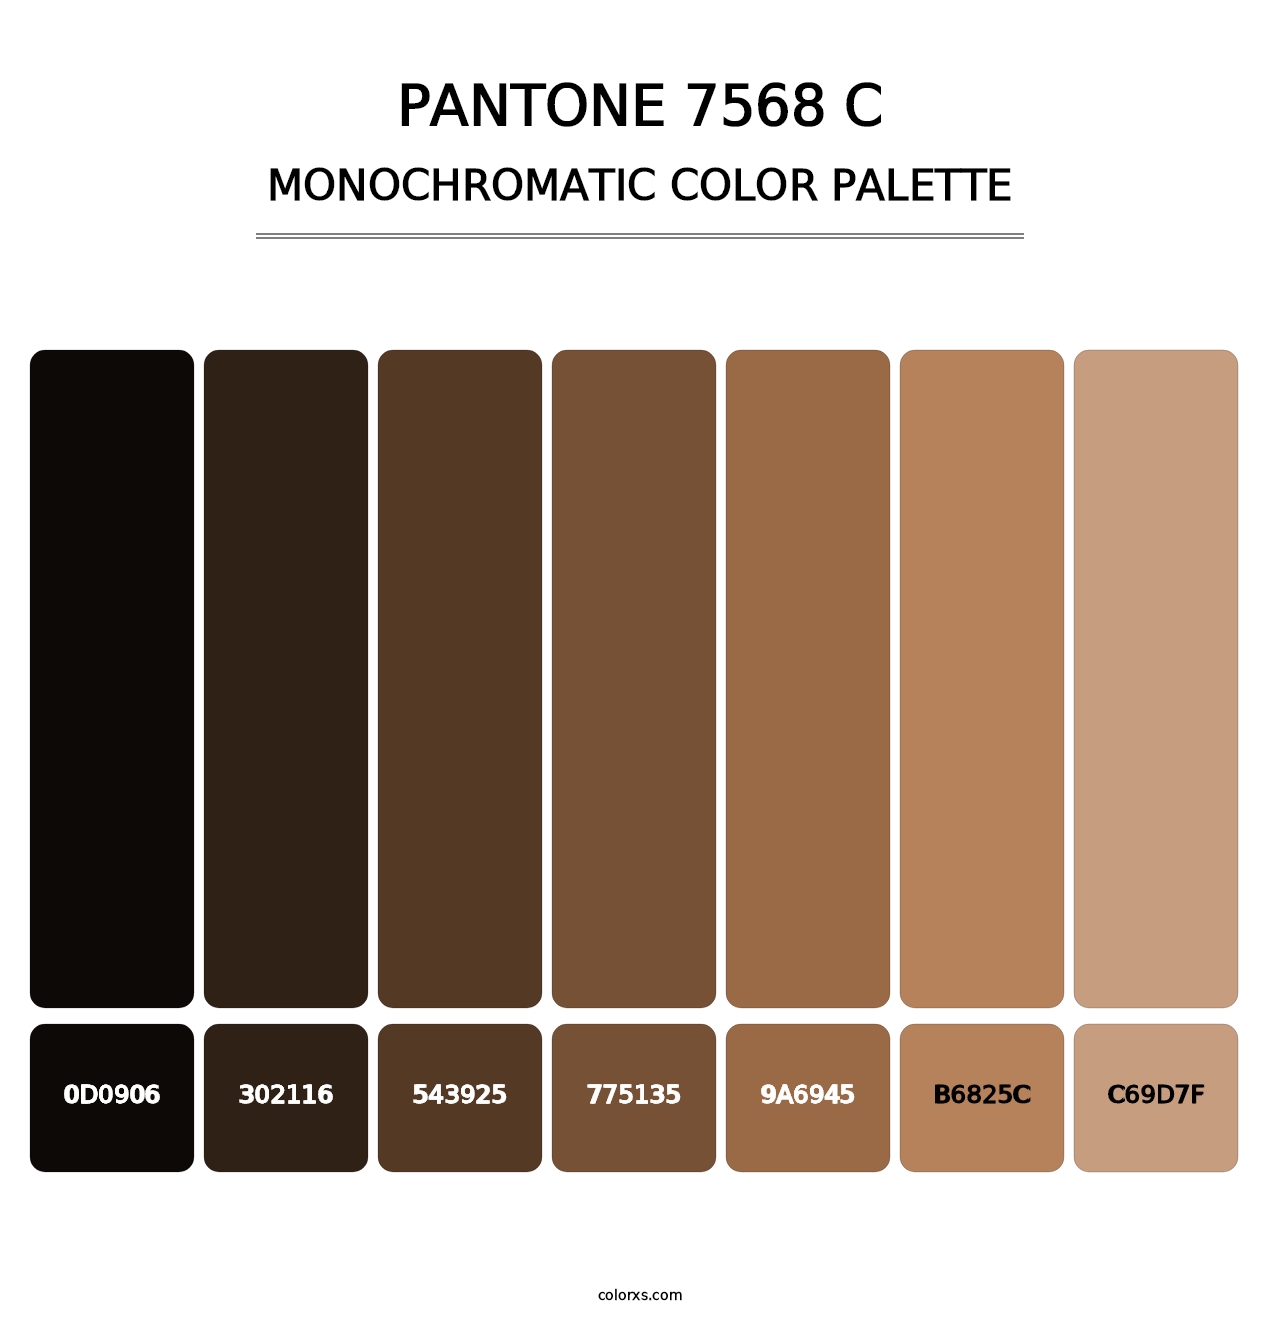 PANTONE 7568 C - Monochromatic Color Palette